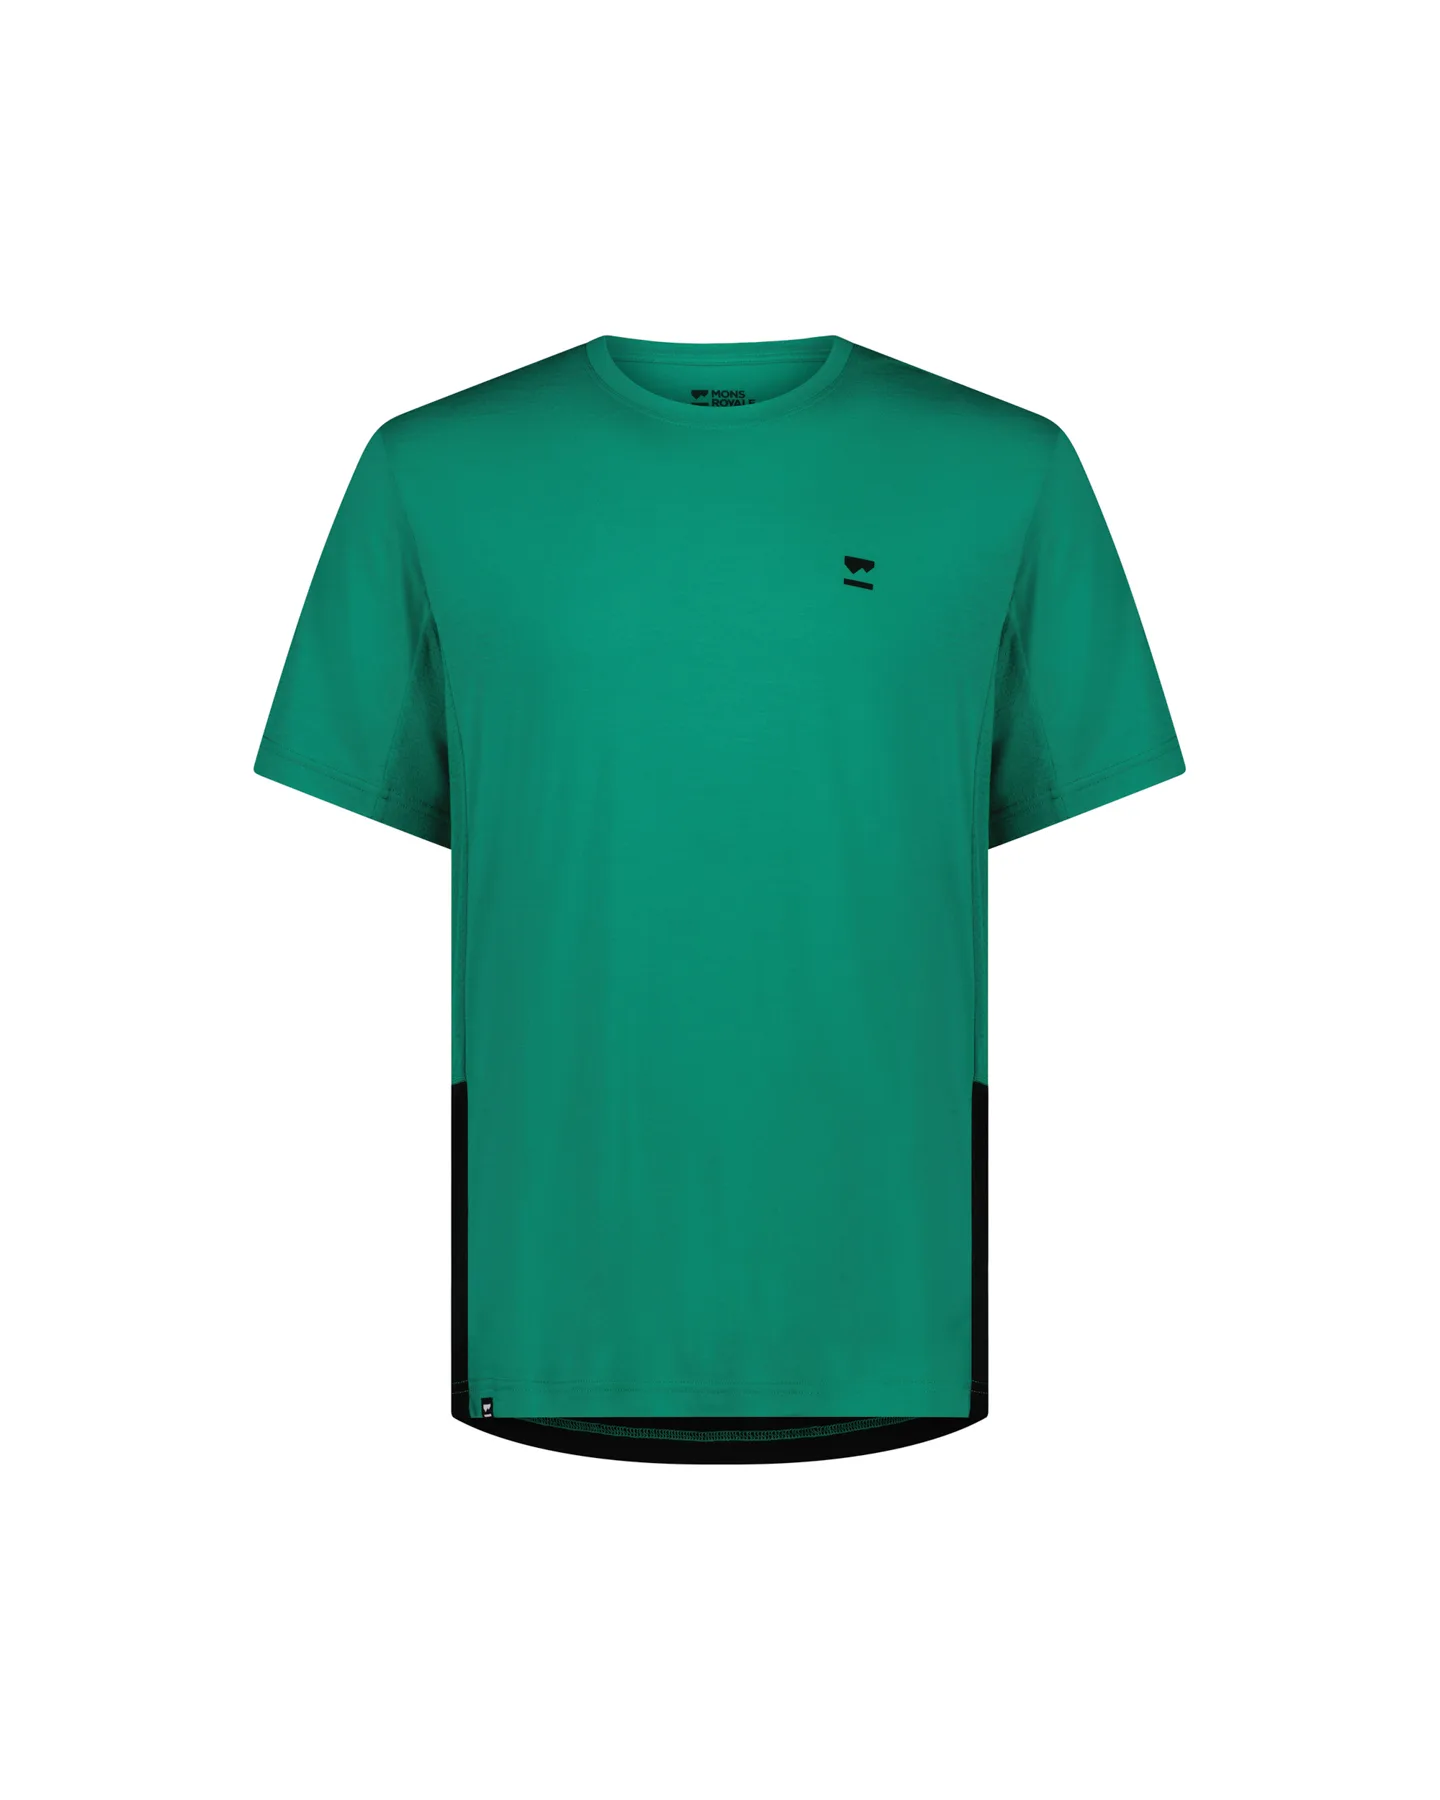 Mons Royale - Tarn Merino Shift T-Shirt - Pop Green / Black - Grøn, Sort XL